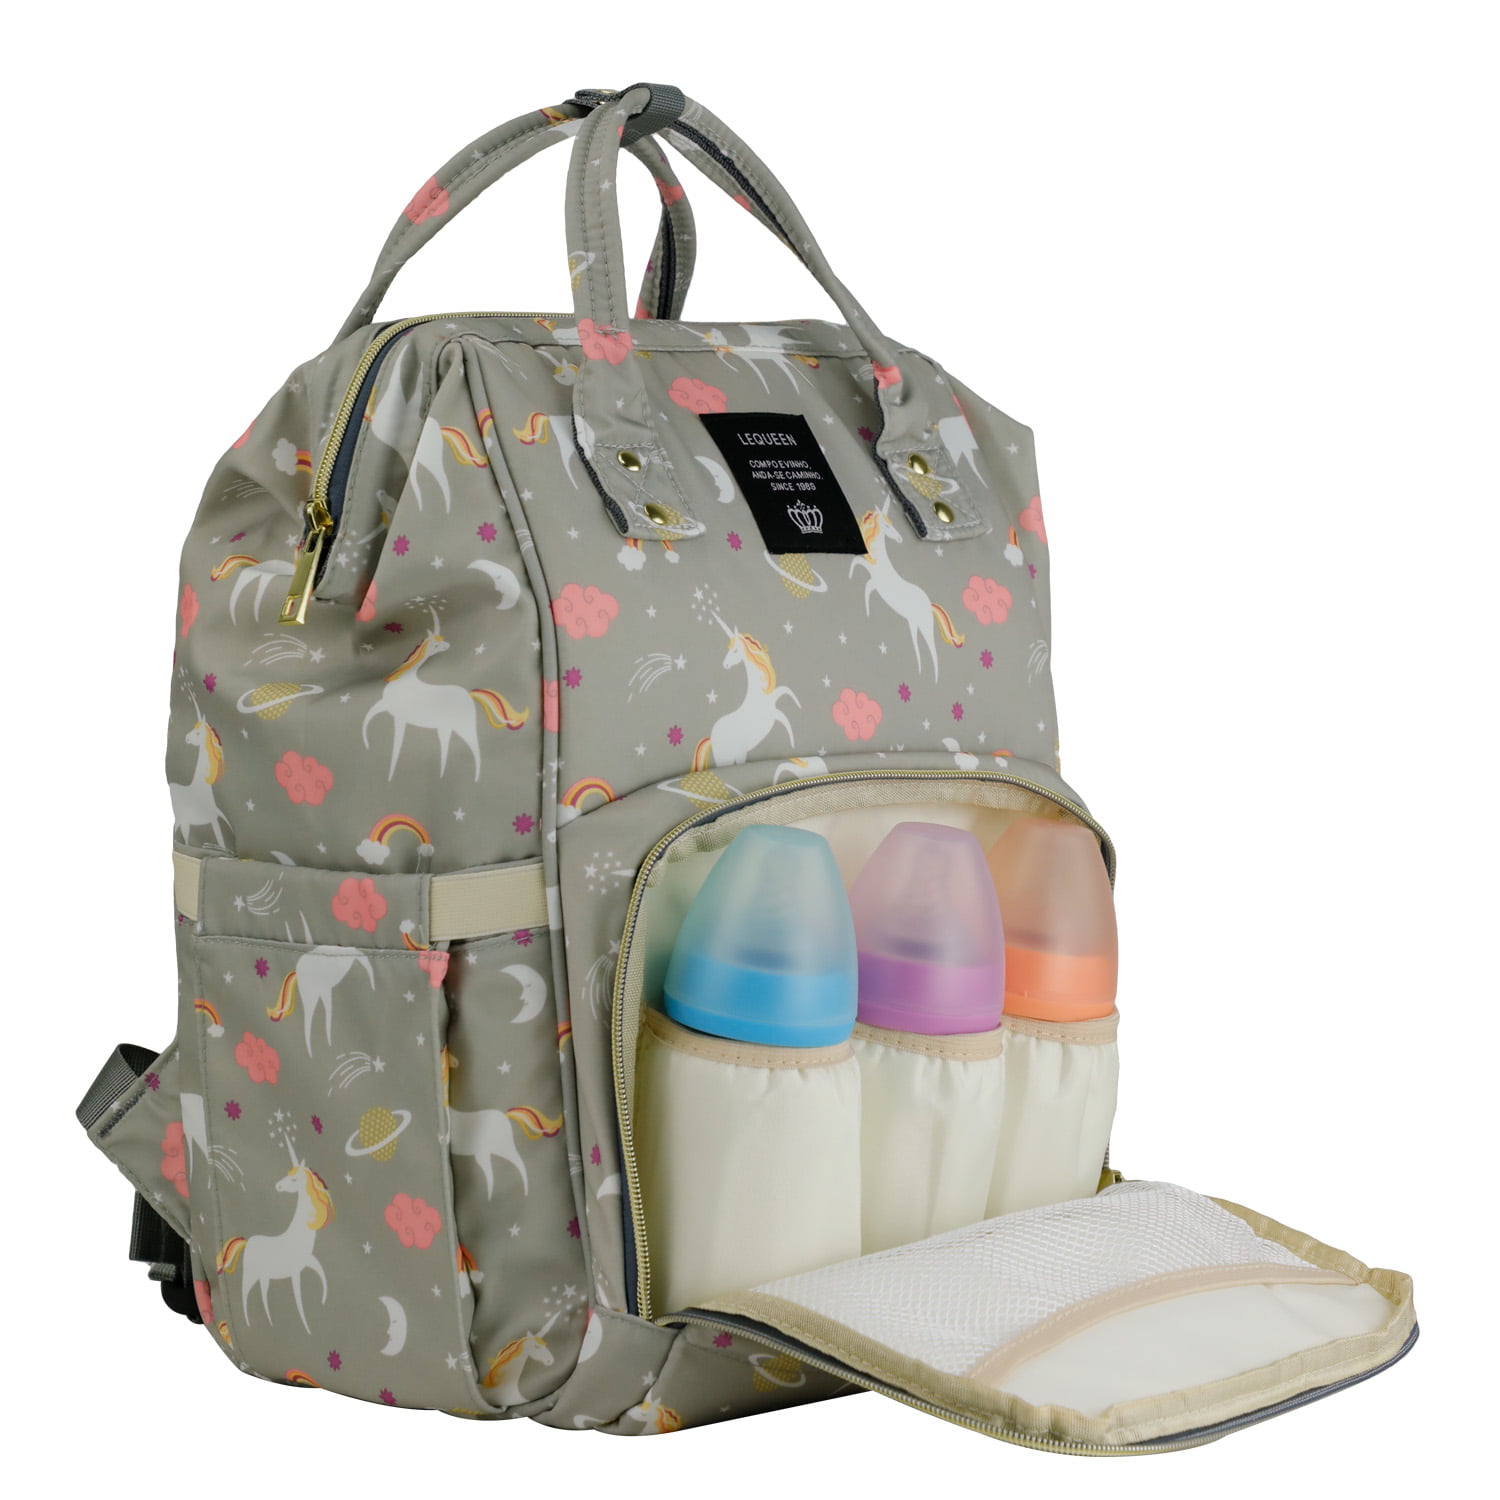 LEQUEEN Waterproof Baby Diaper Backpack - Light Gray